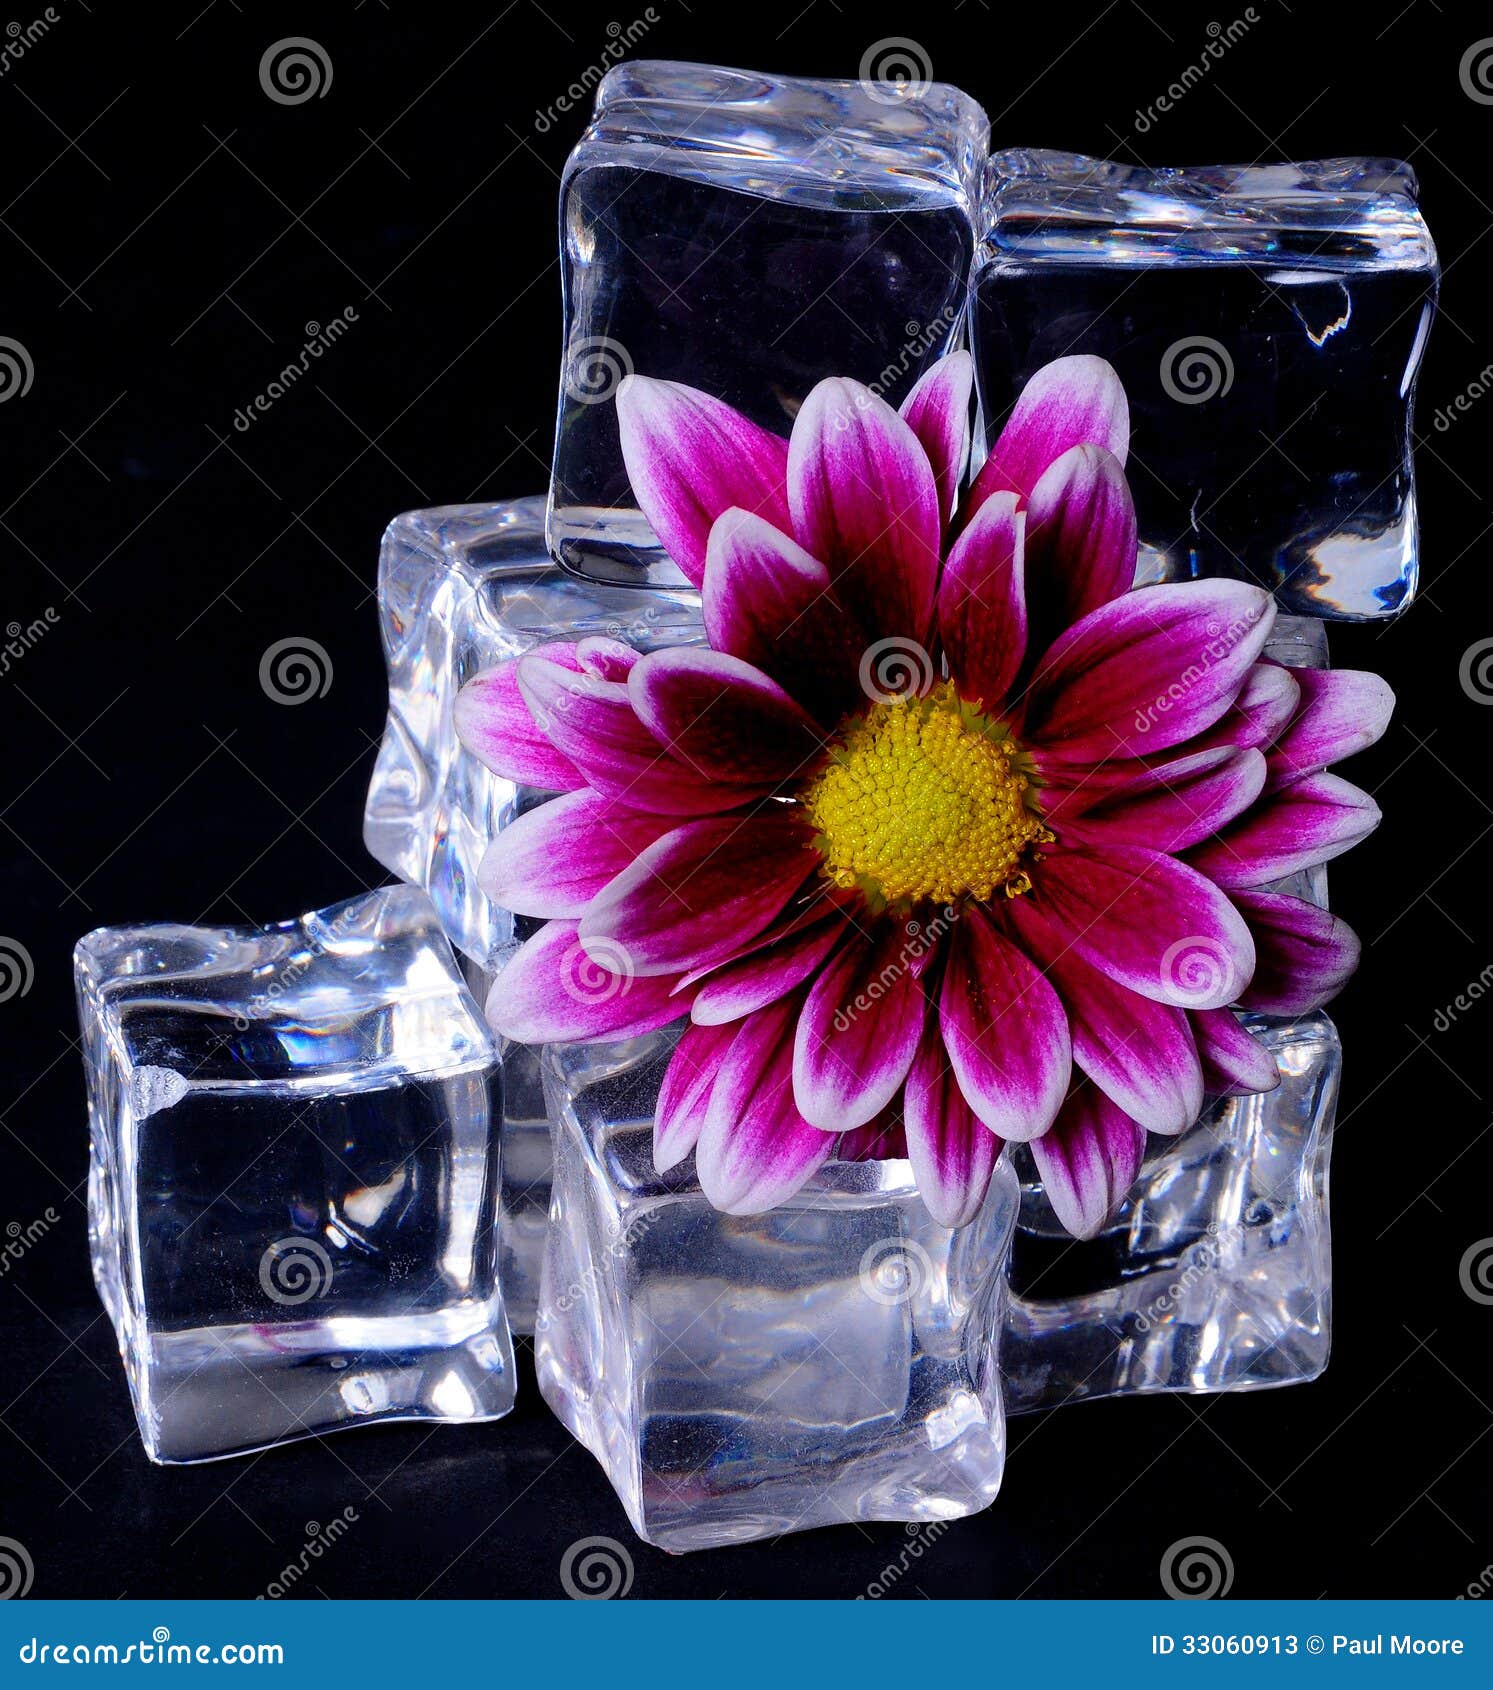 壁纸 冰块，花朵，水滴，朦胧 2560x1600 HD 高清壁纸, 图片, 照片